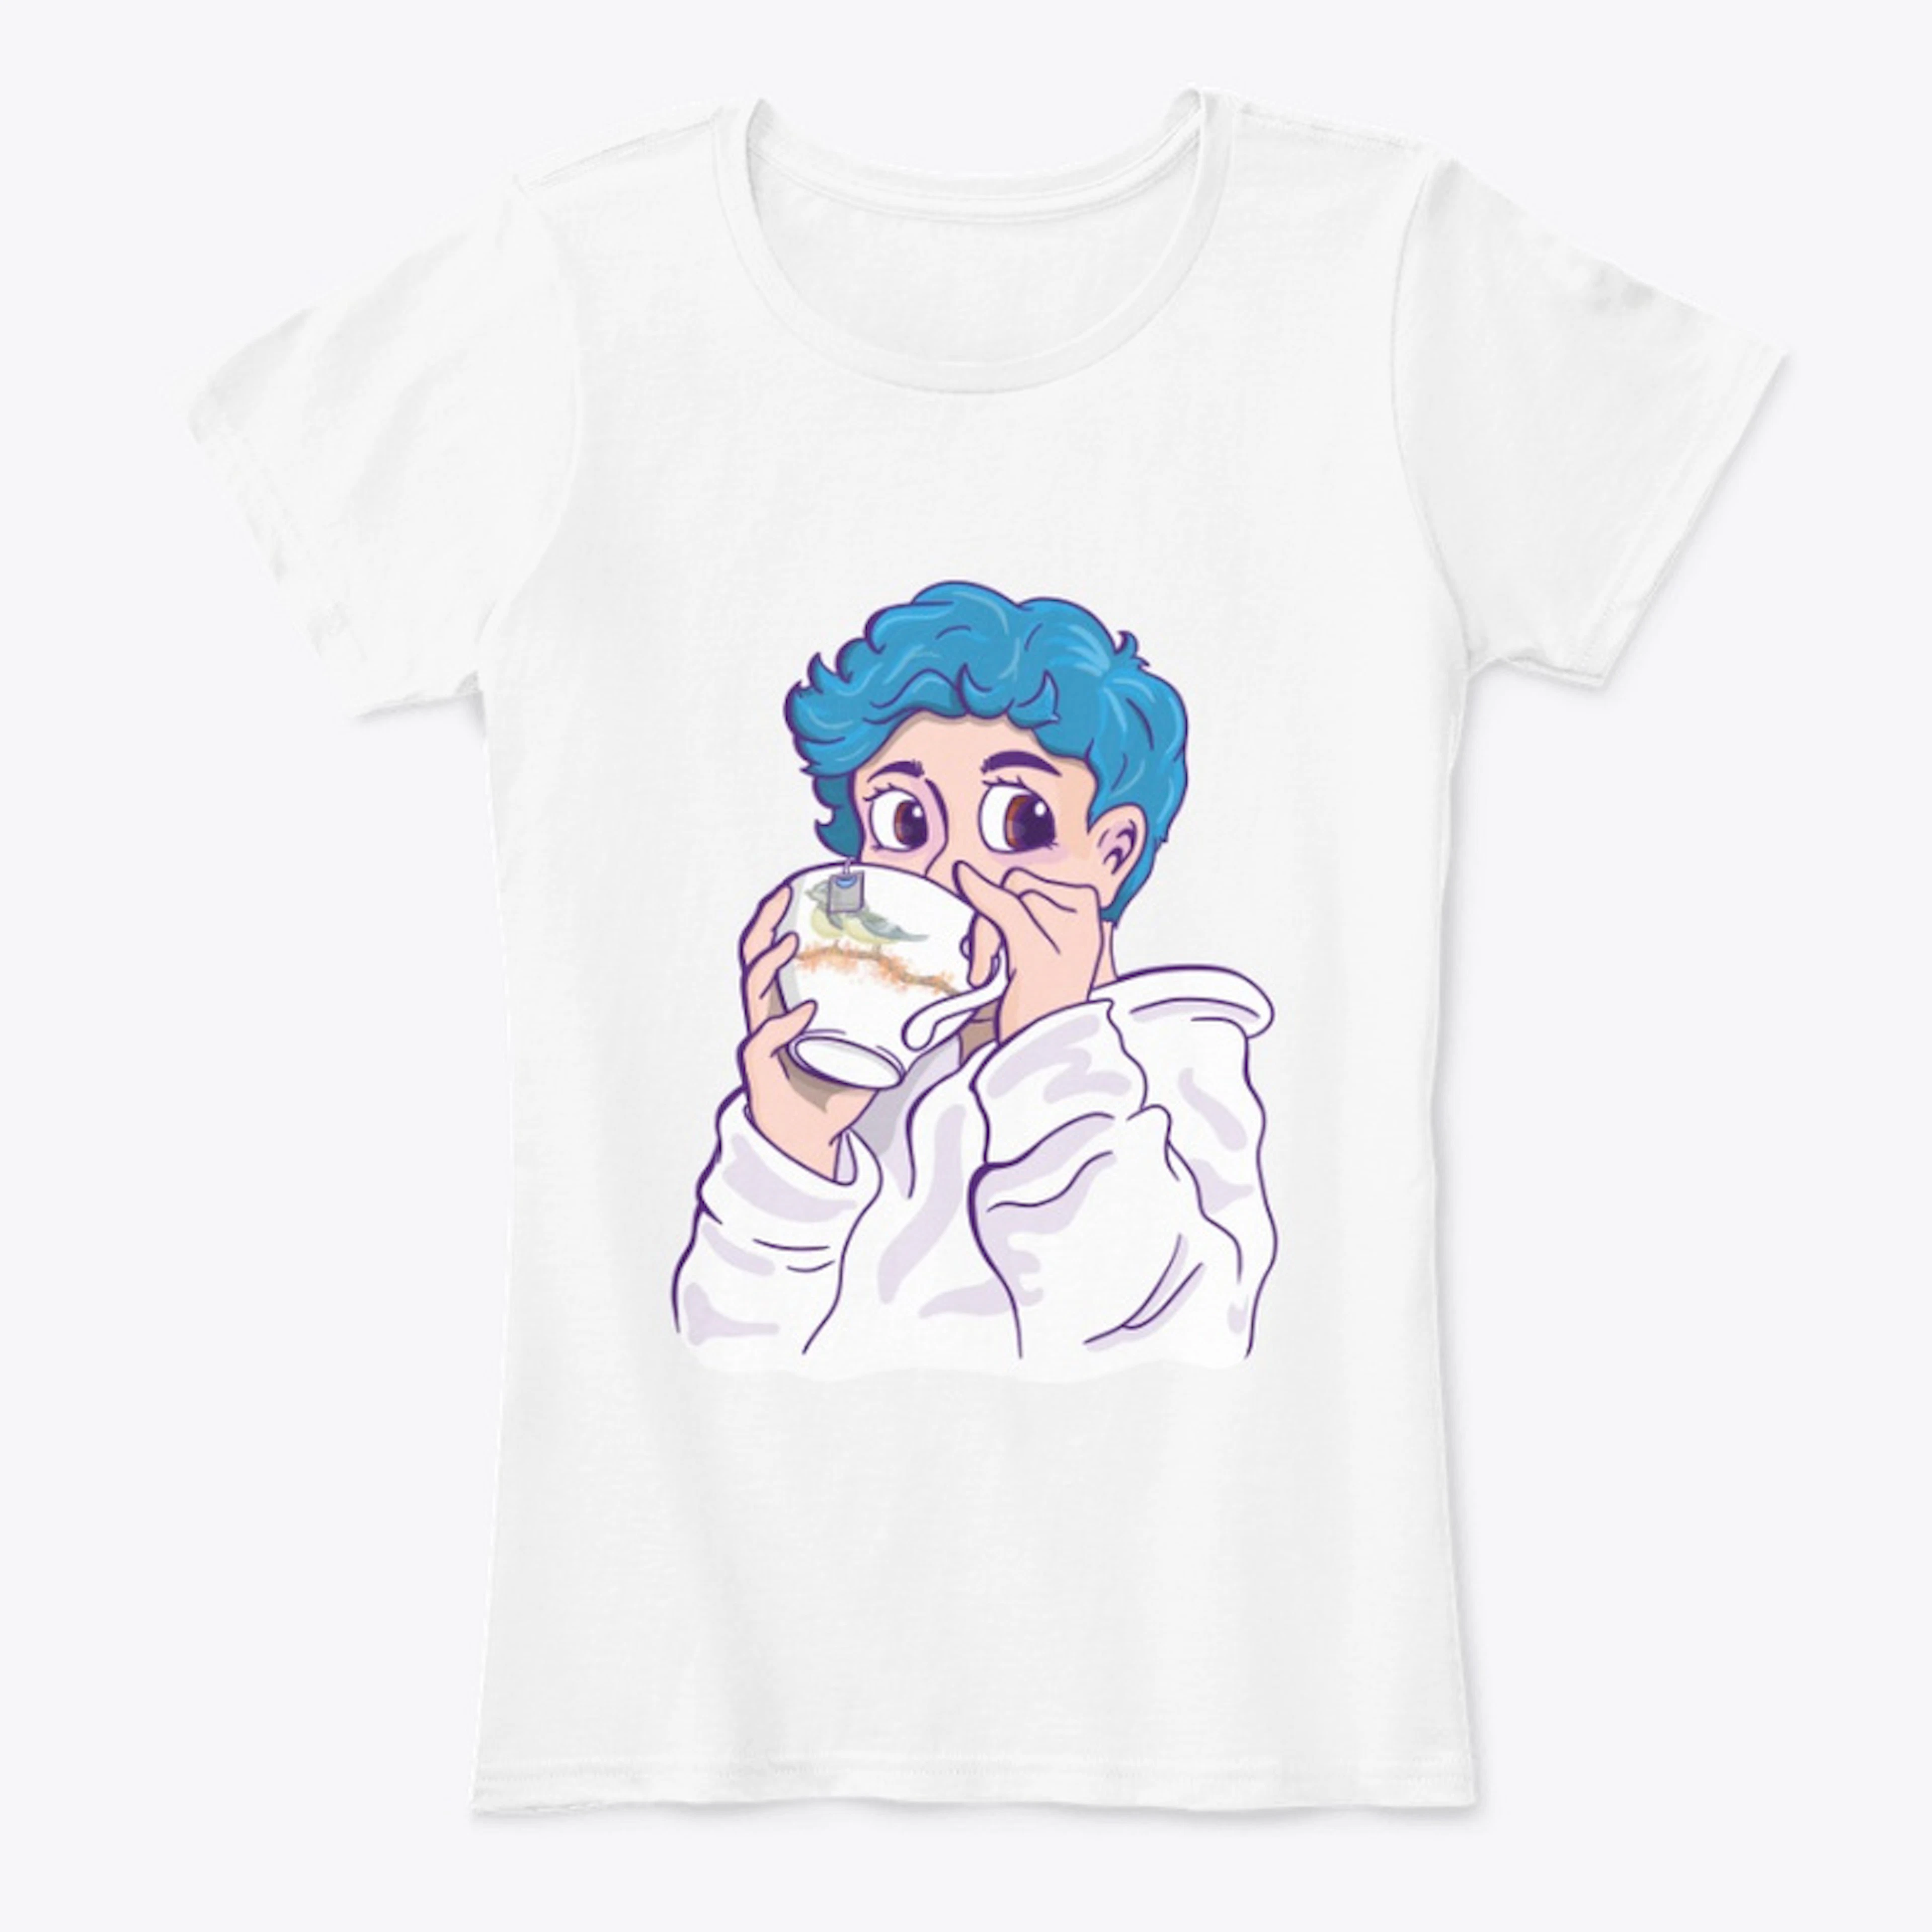 Tea Sip Shirt - Blue Hair